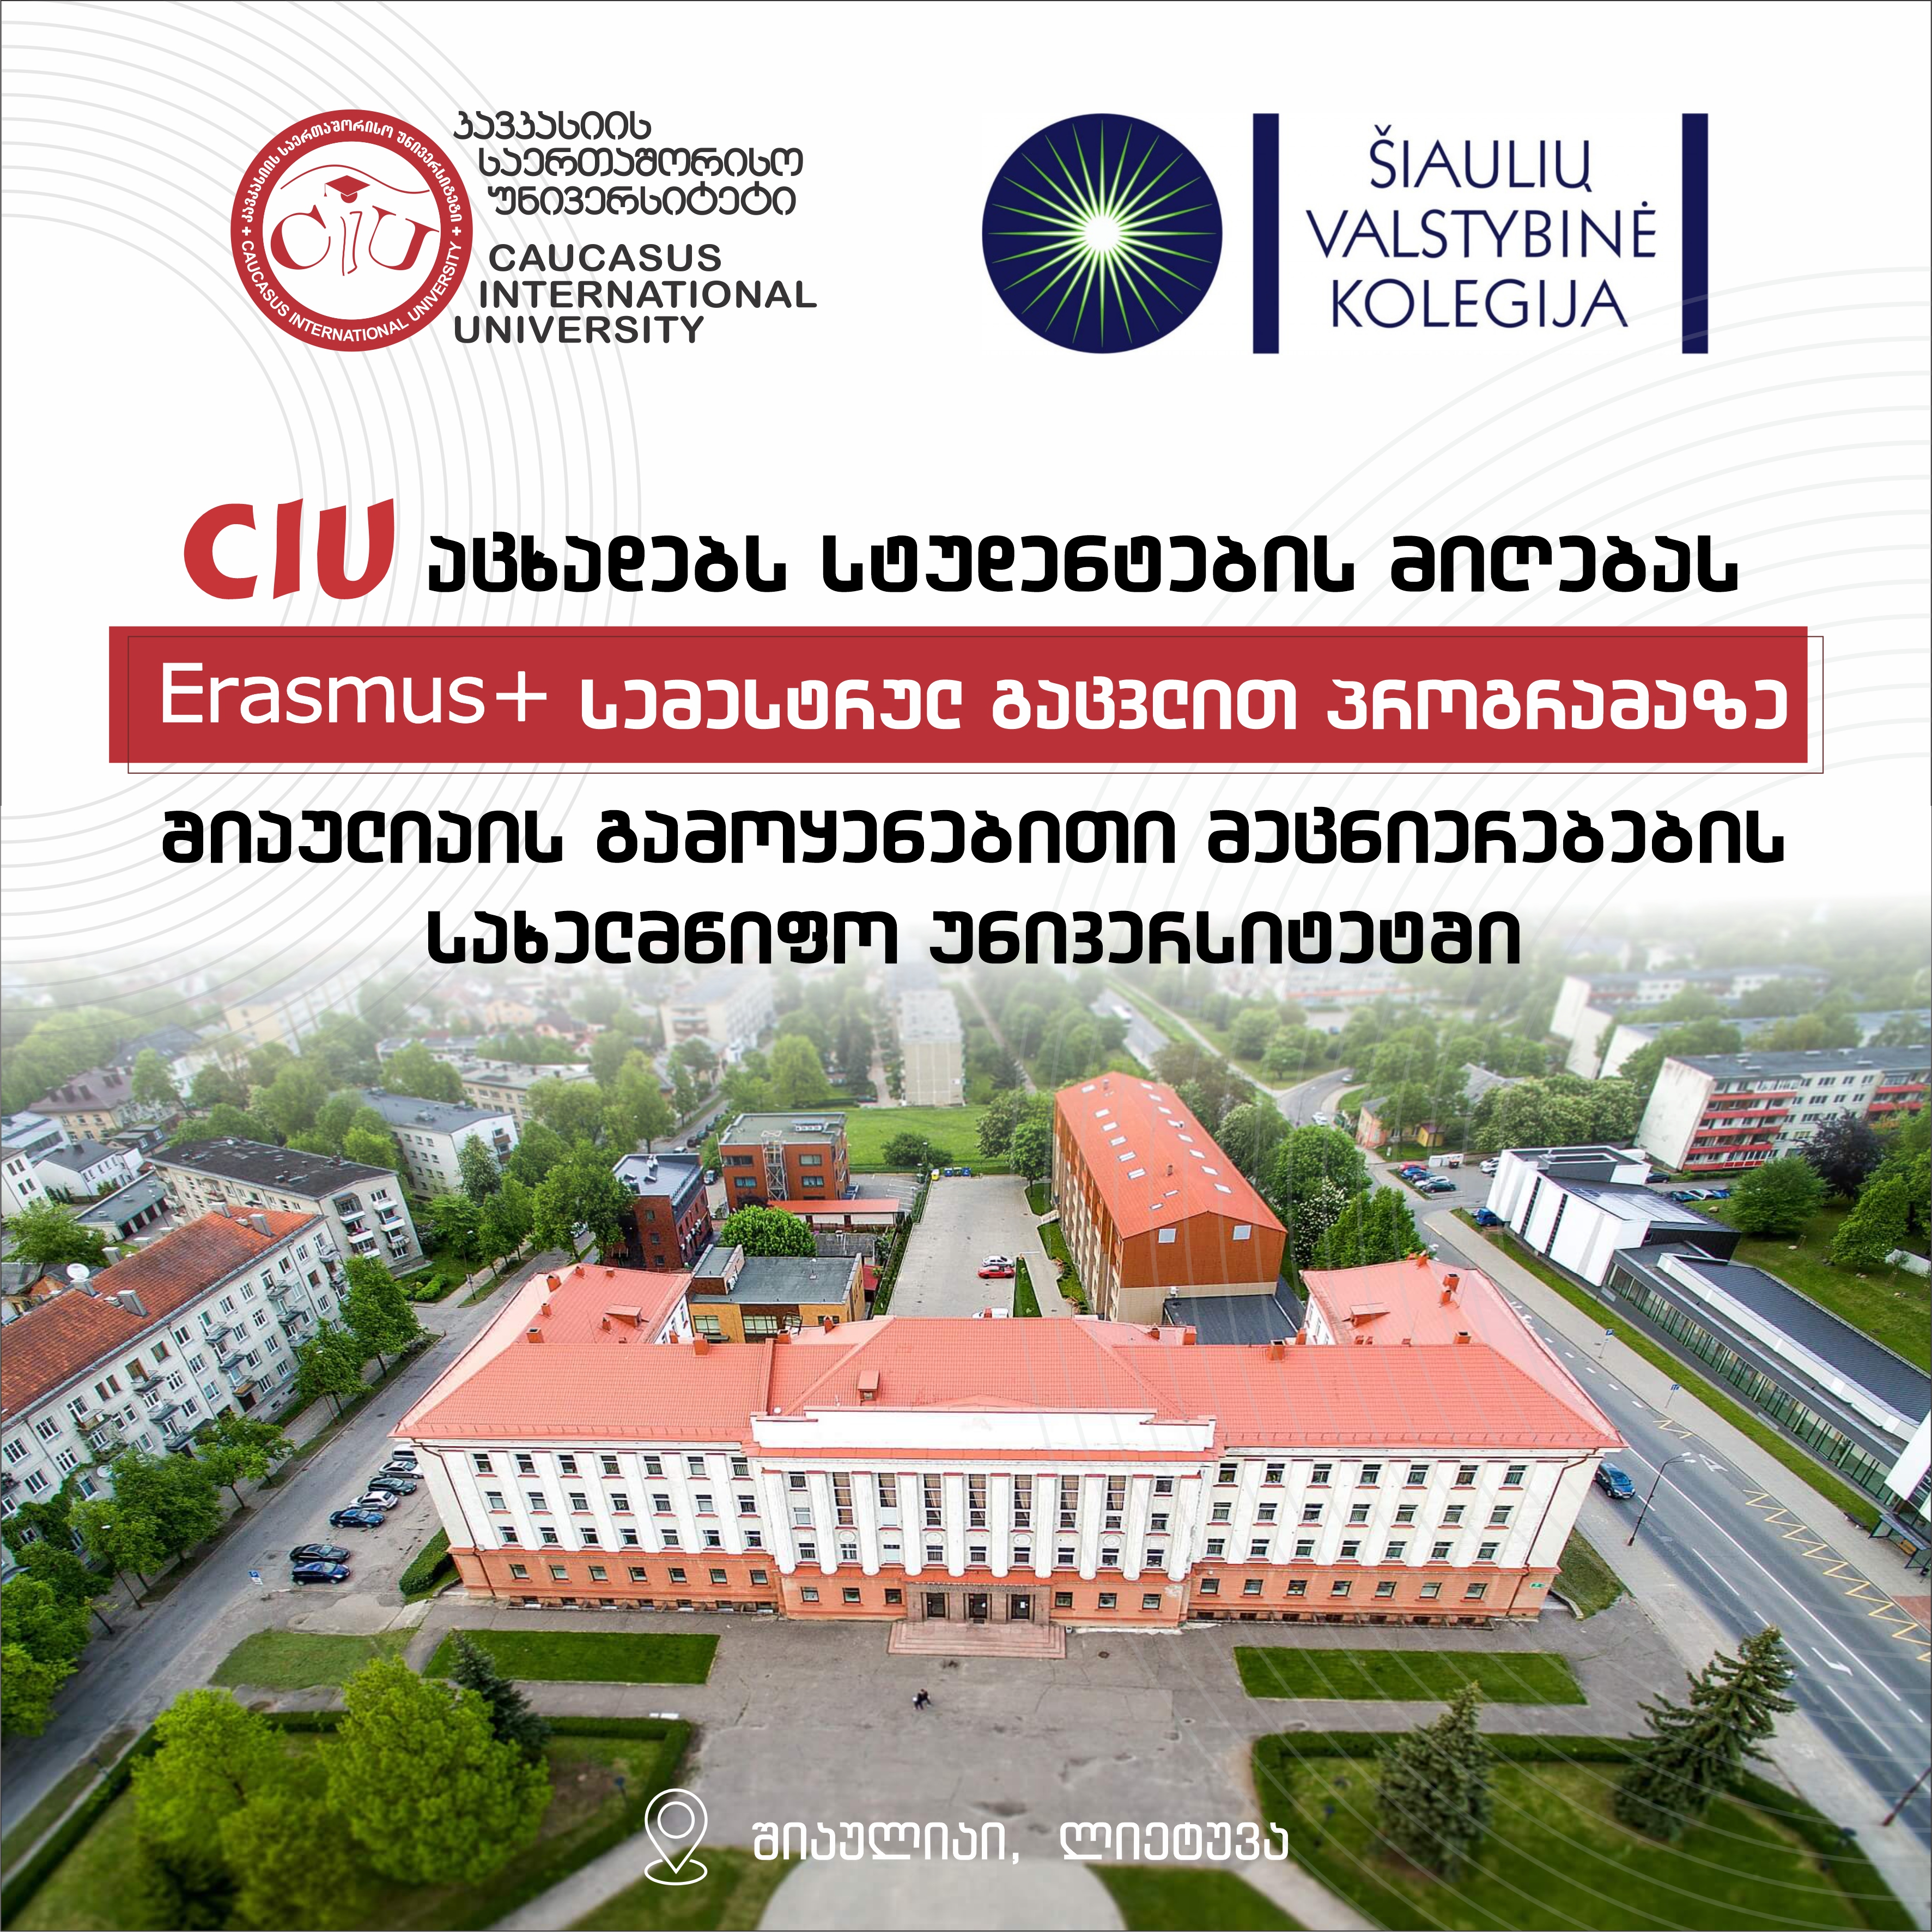 კავკასიის საერთაშორისო უნივერსიტეტი აცხადებს სტუდენტების მიღებას Erasmus+